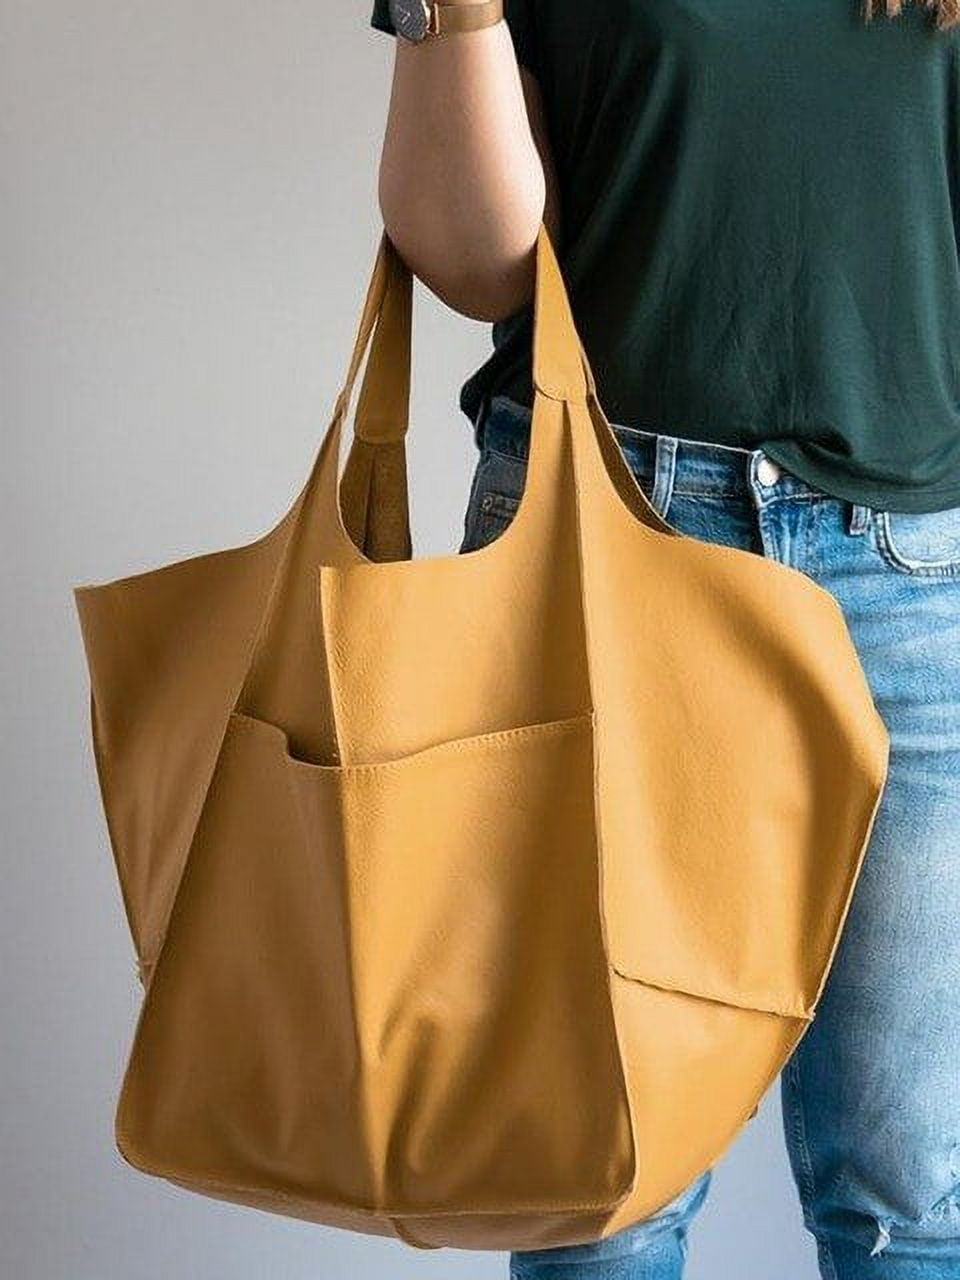 Women's Shoulder Bag Handbag Leather Bag Shoulder Bag Women's Clutch Designer  Handbags Totes Foldable Big Stripe Shoulder Bag for Women : Amazon.de:  Fashion